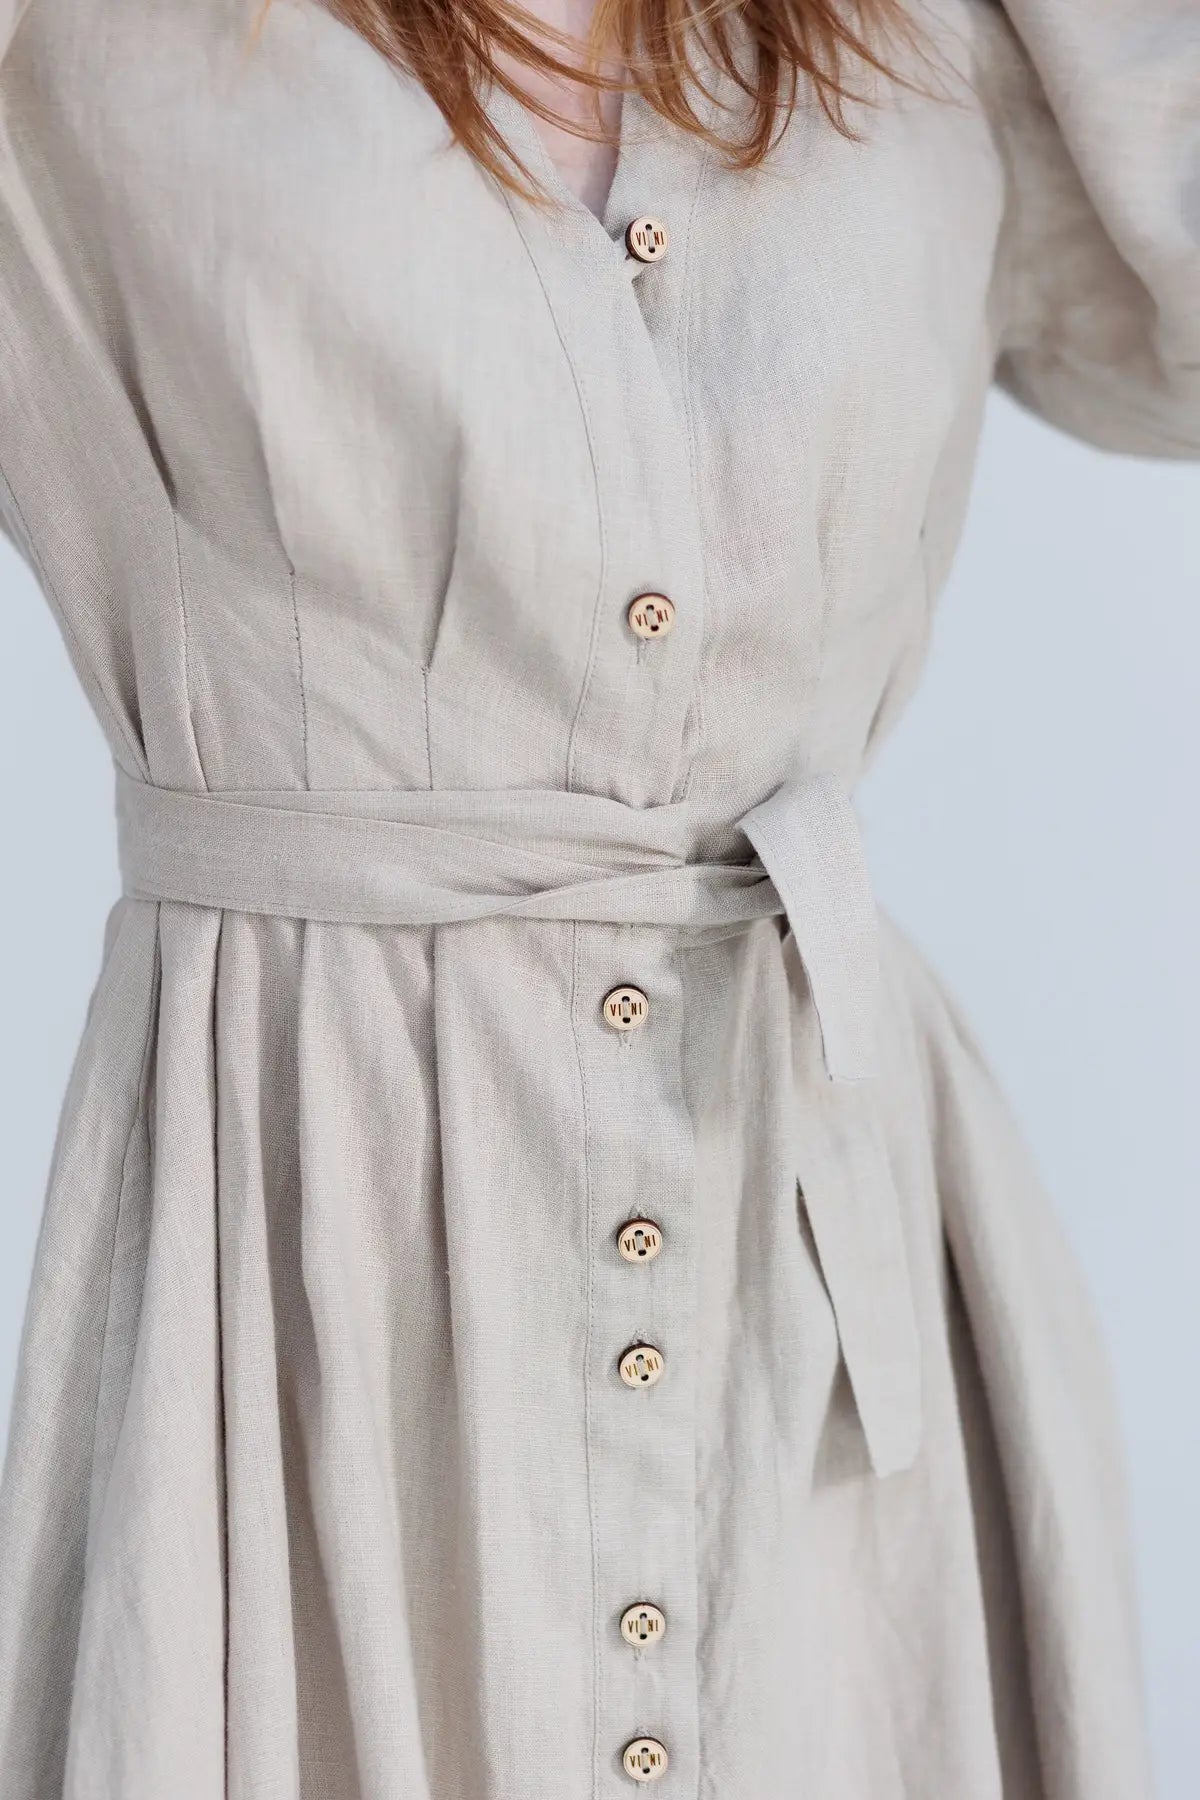 Montgomery linen dress beige